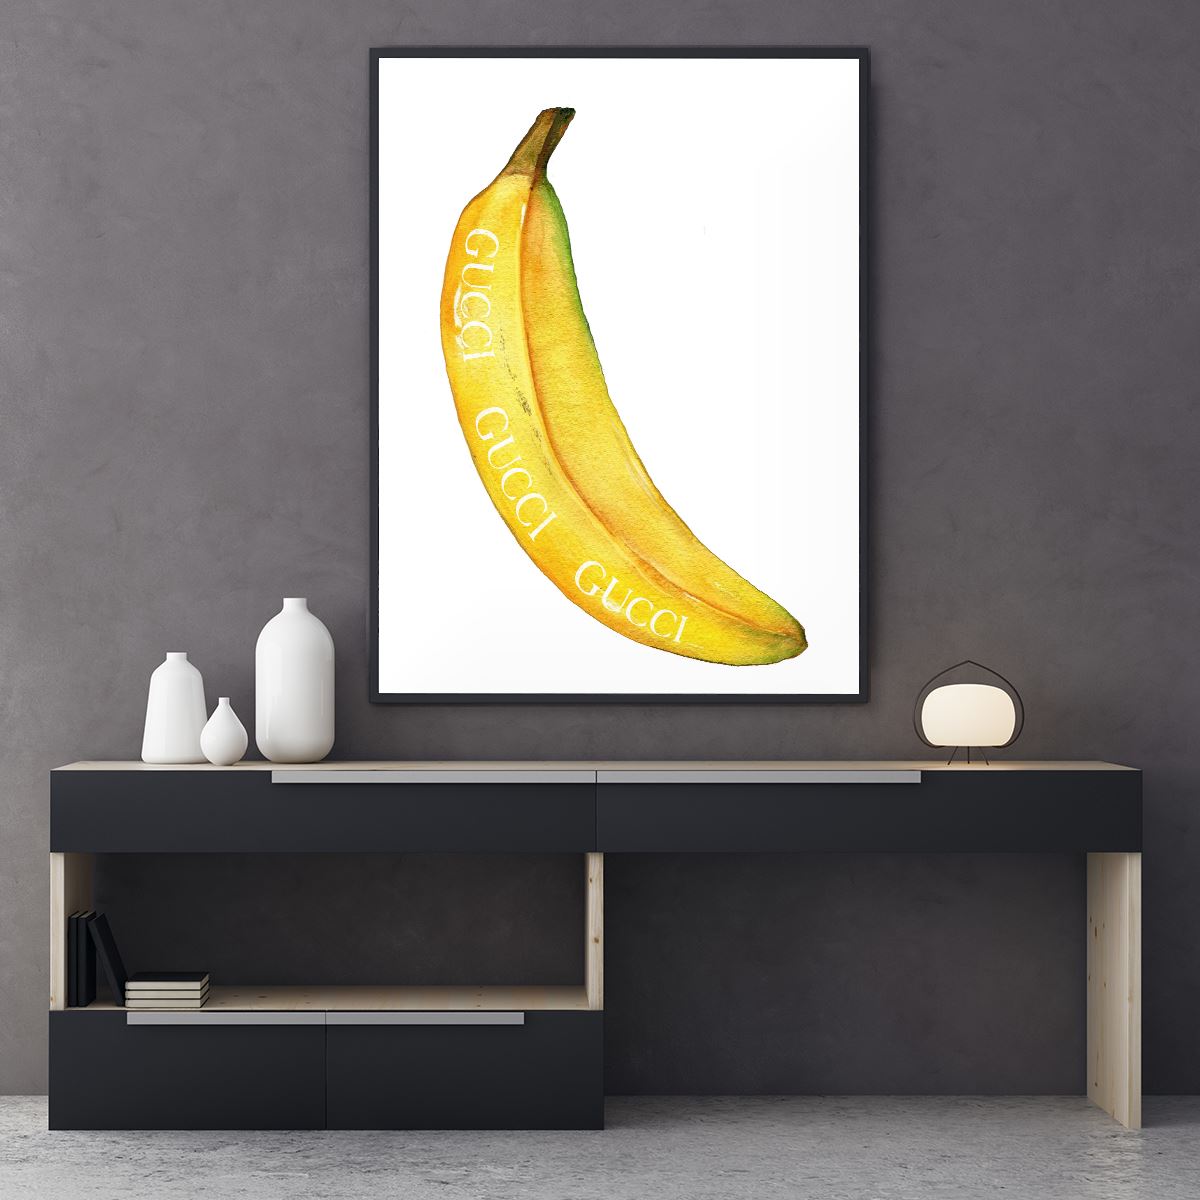 GG Banana